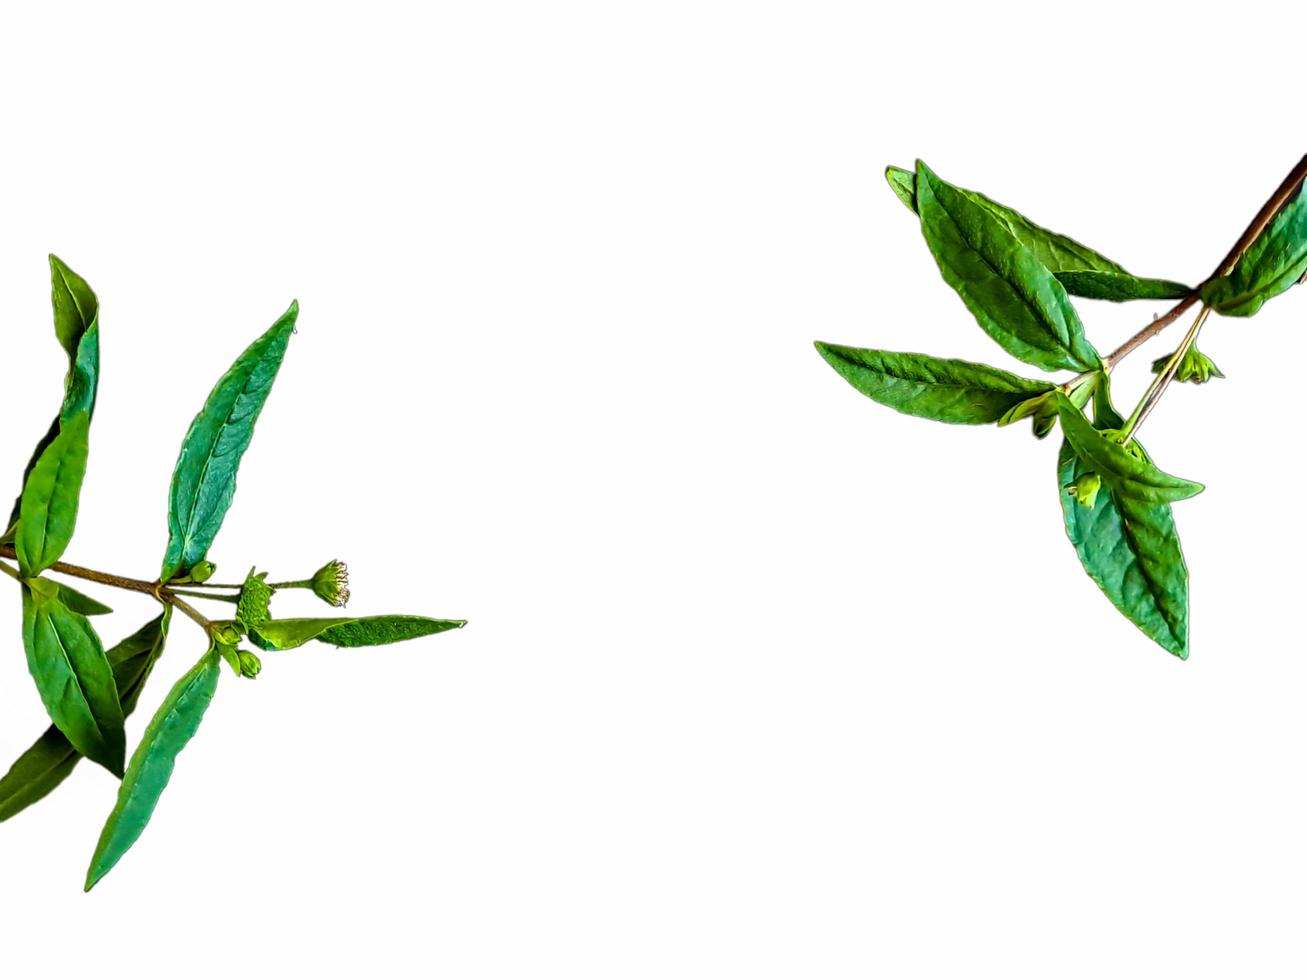 grevillea robusta verde, comúnmente conocida como roble de seda del sur, roble de seda o roble de seda, roble de plata o roble de plata australiano, es una planta con flores en la familia proteaceae, fondo blanco aislado foto